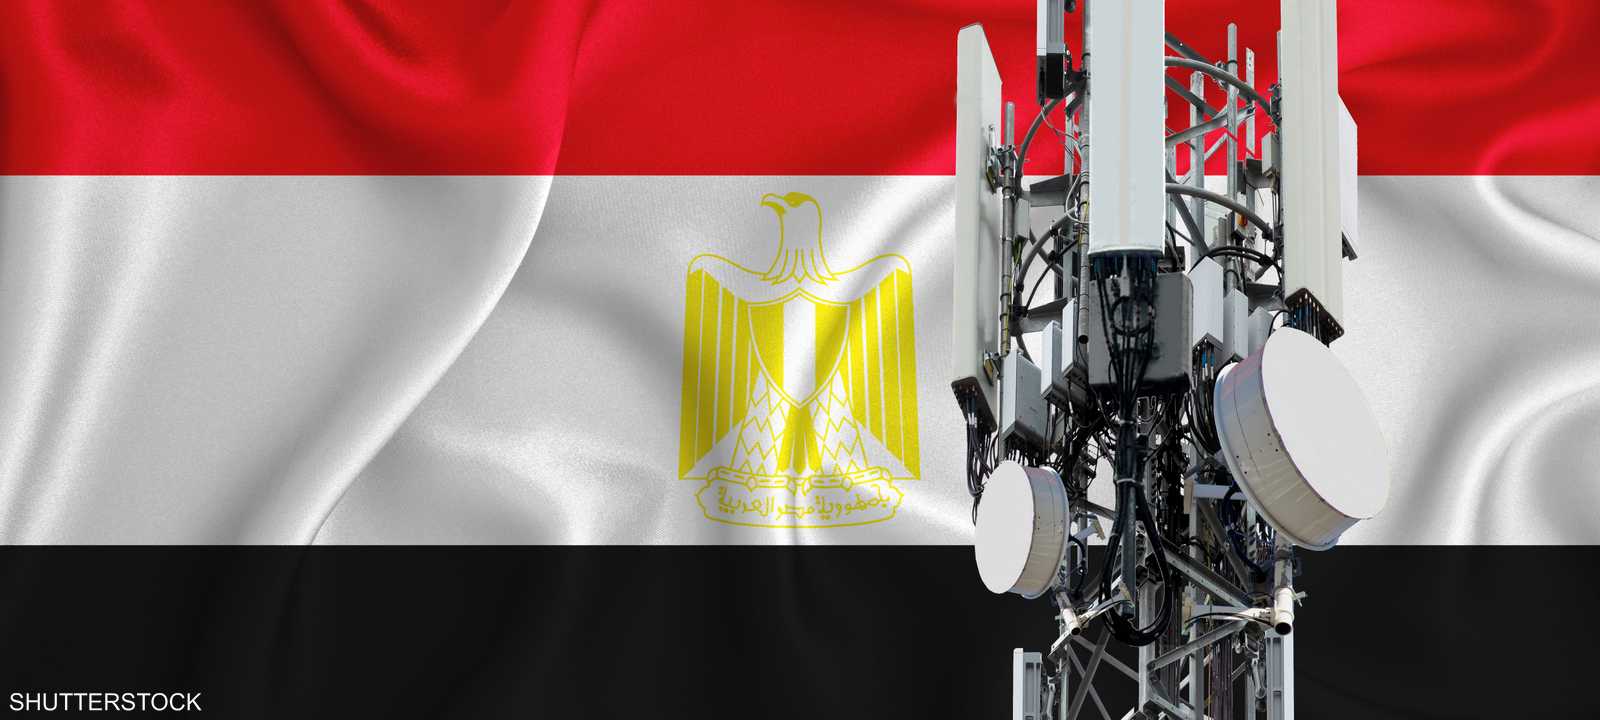 صورة تعبيرية لأجهزة الاتصالات اللاسلكيه مع العلم المصري